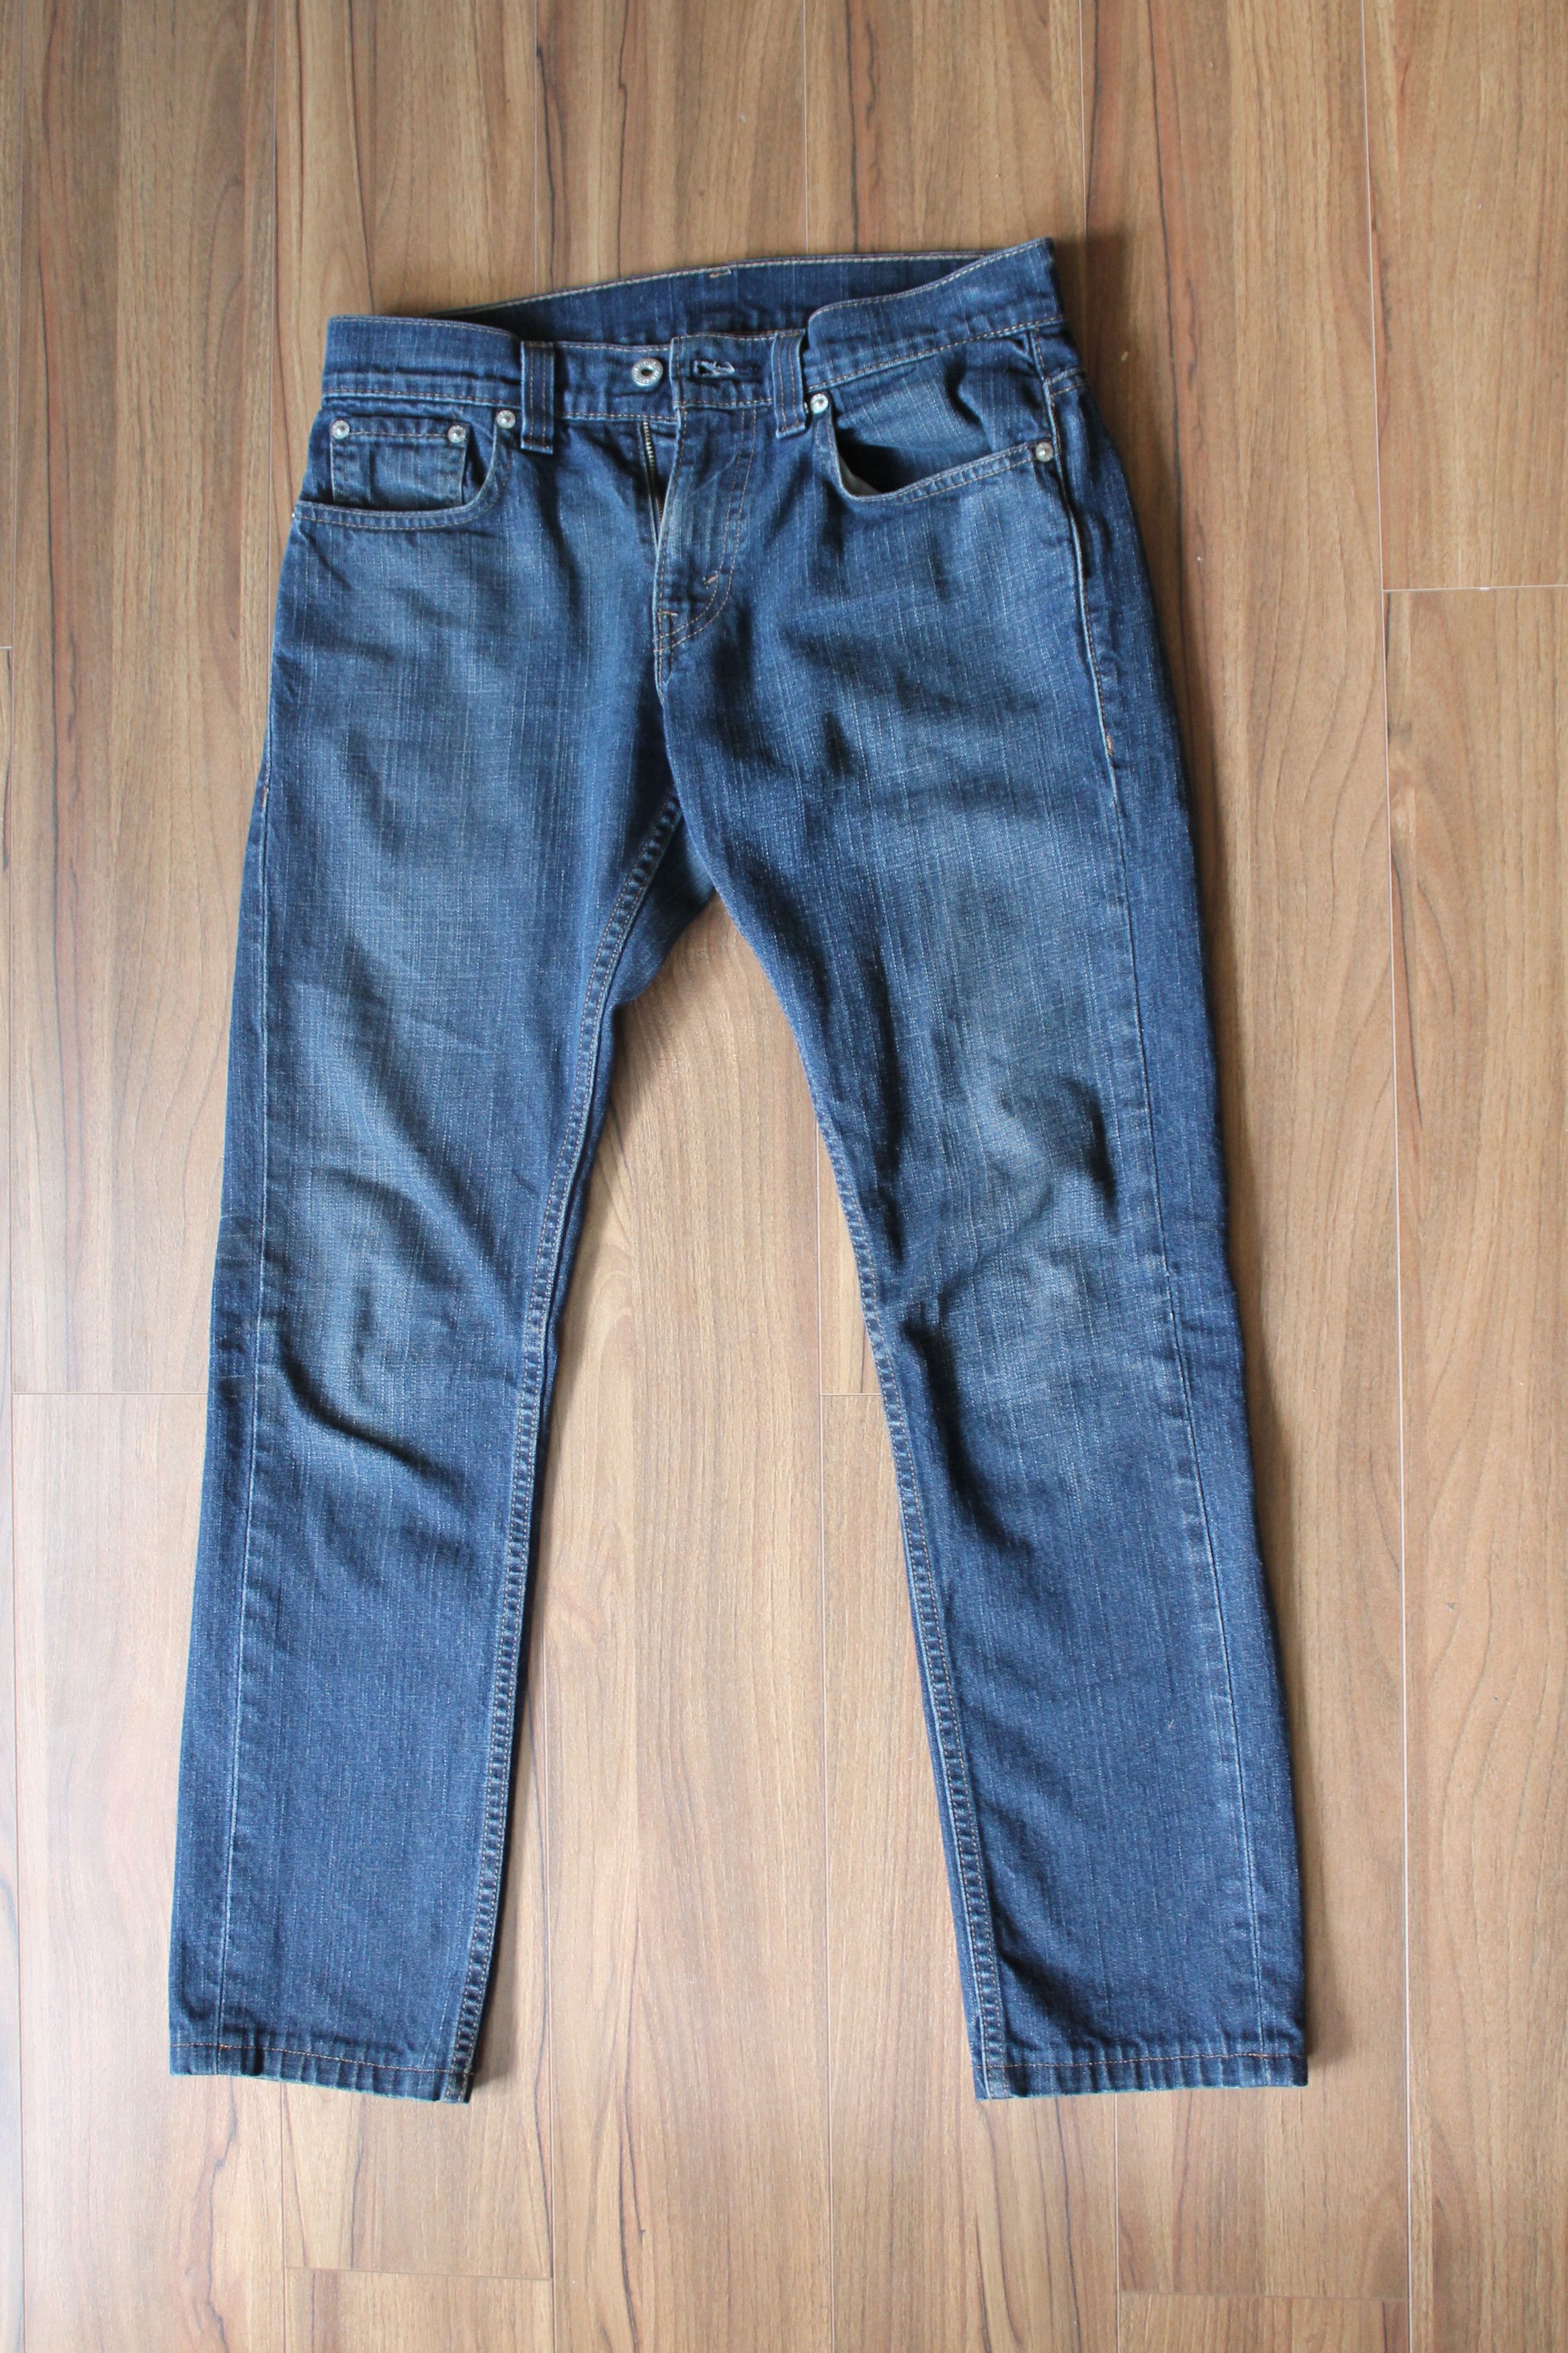 Levi's Navy Blue Levi's 511 Selvedge Denim Jeans (29x30) Size US 29 - 1 Preview